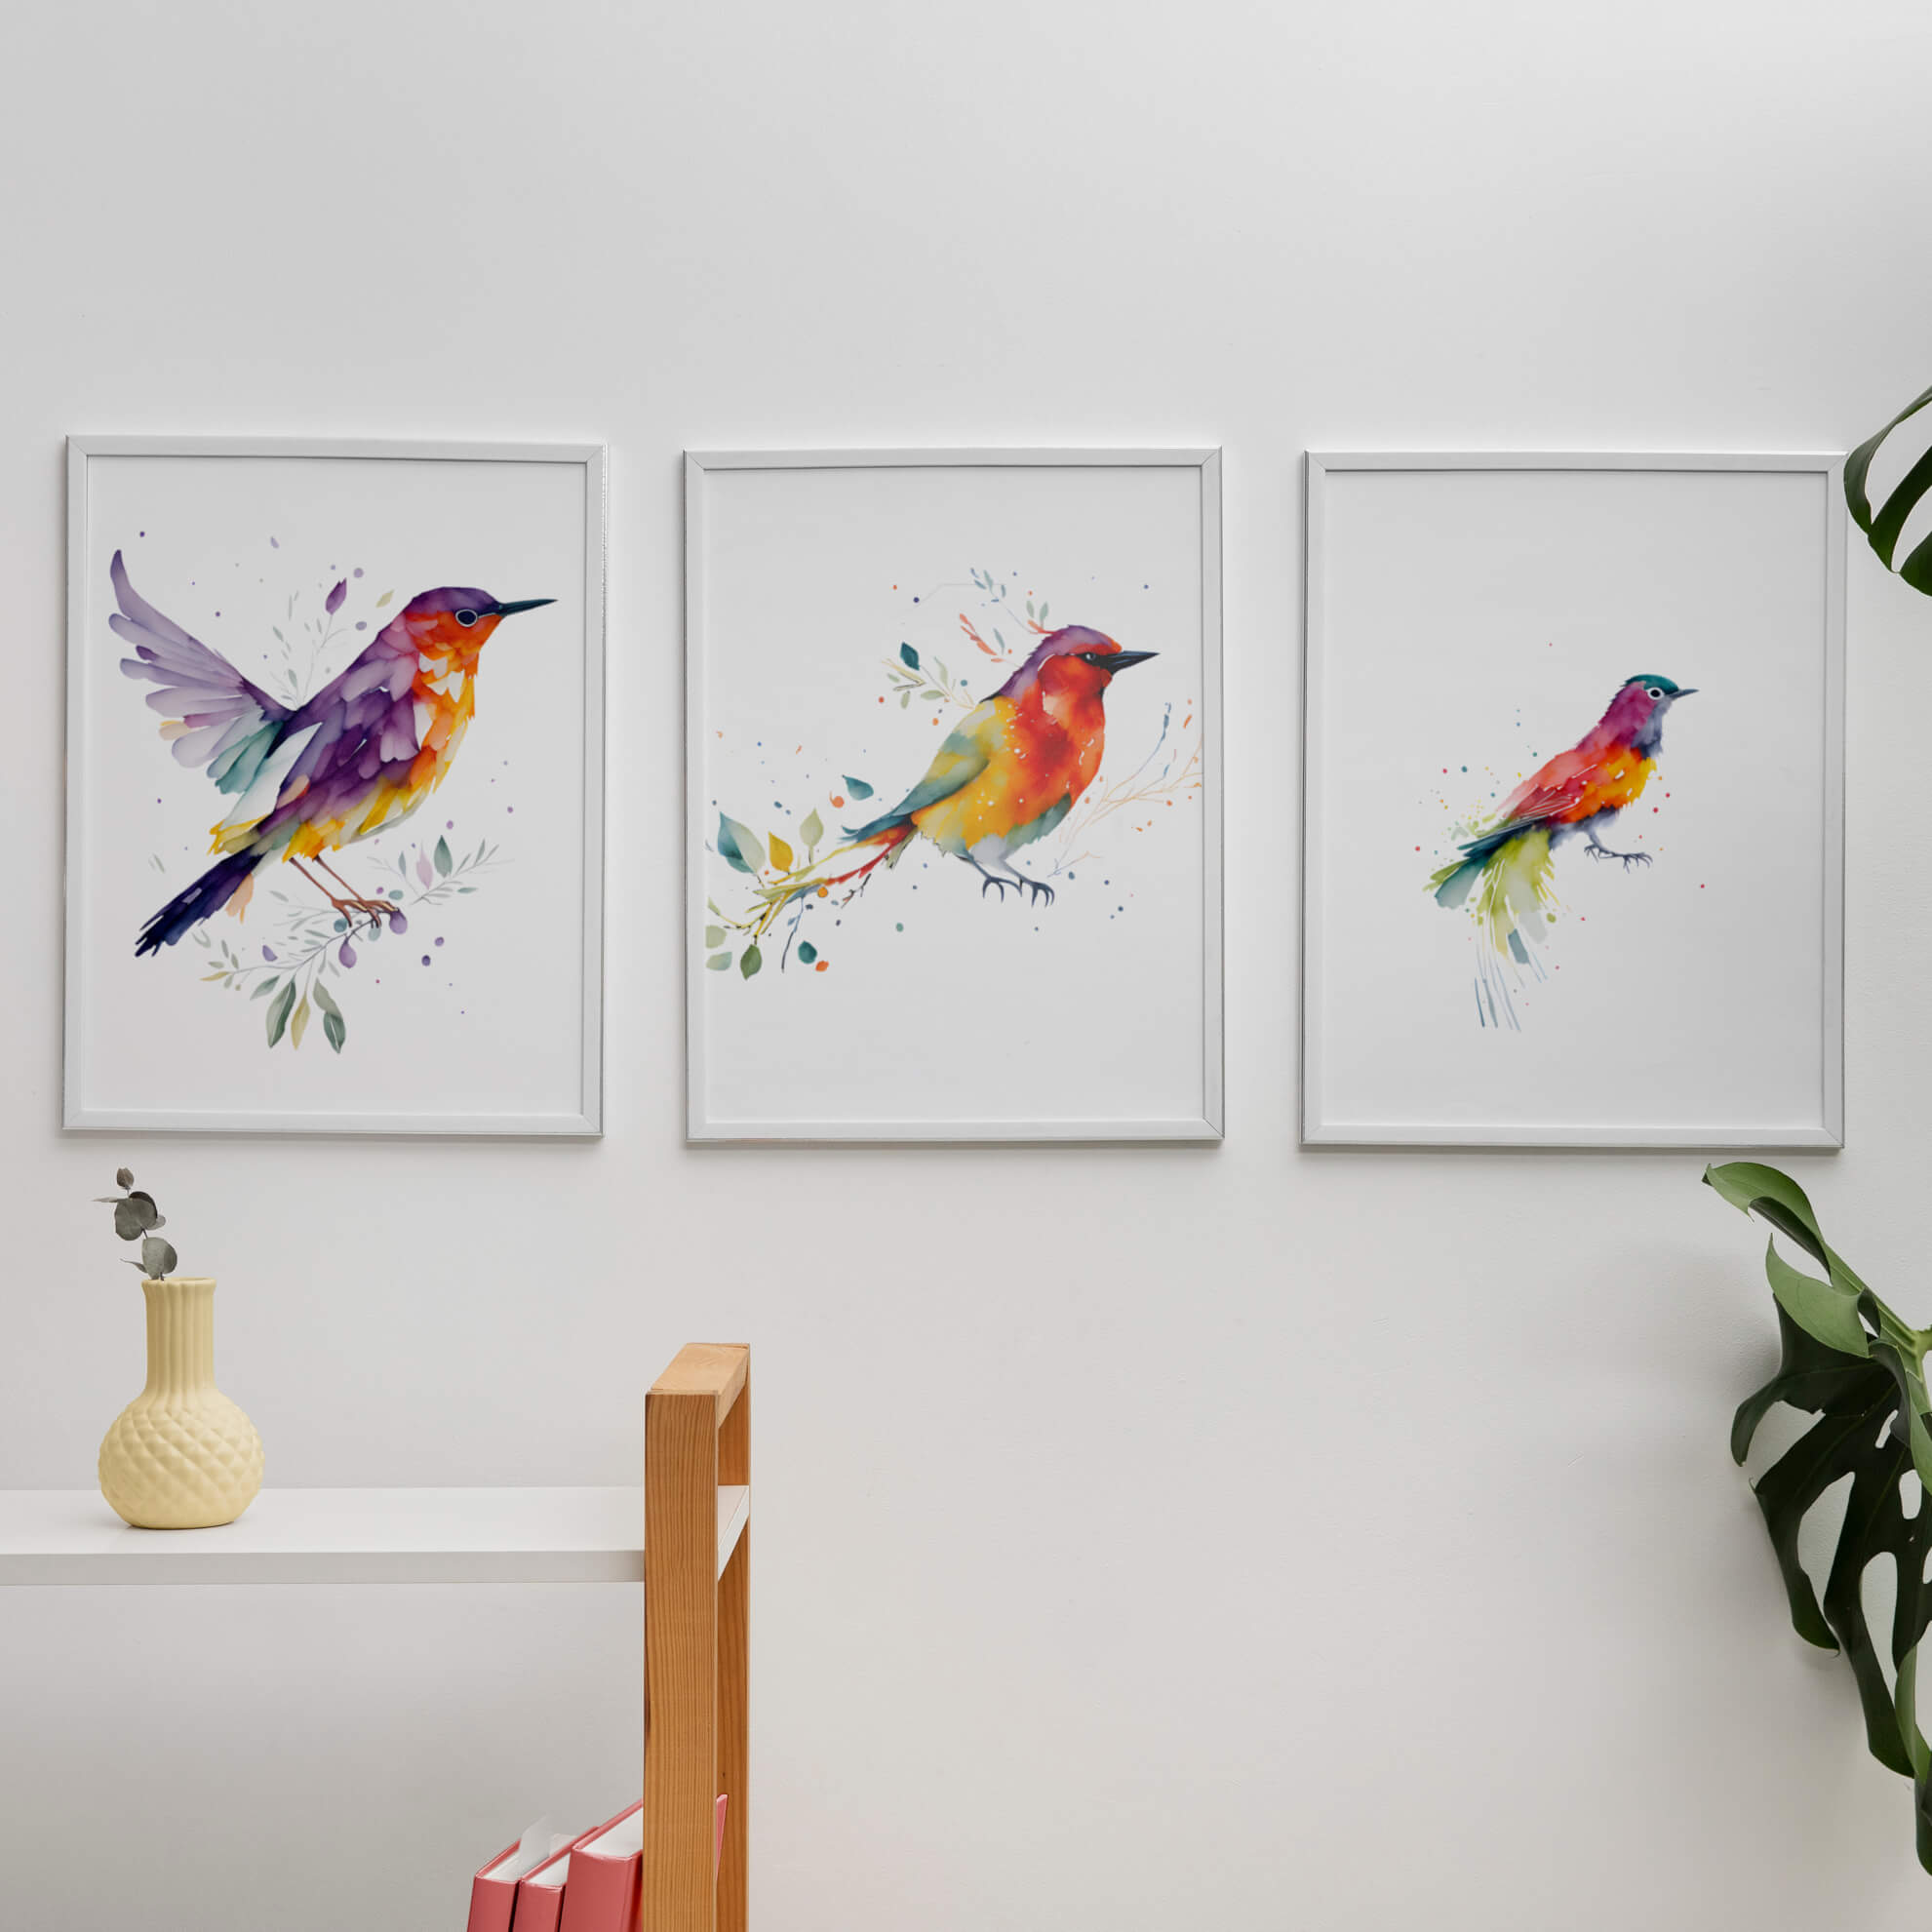 Tropical Bird Wall Art - Wall Art Print Set Of 3